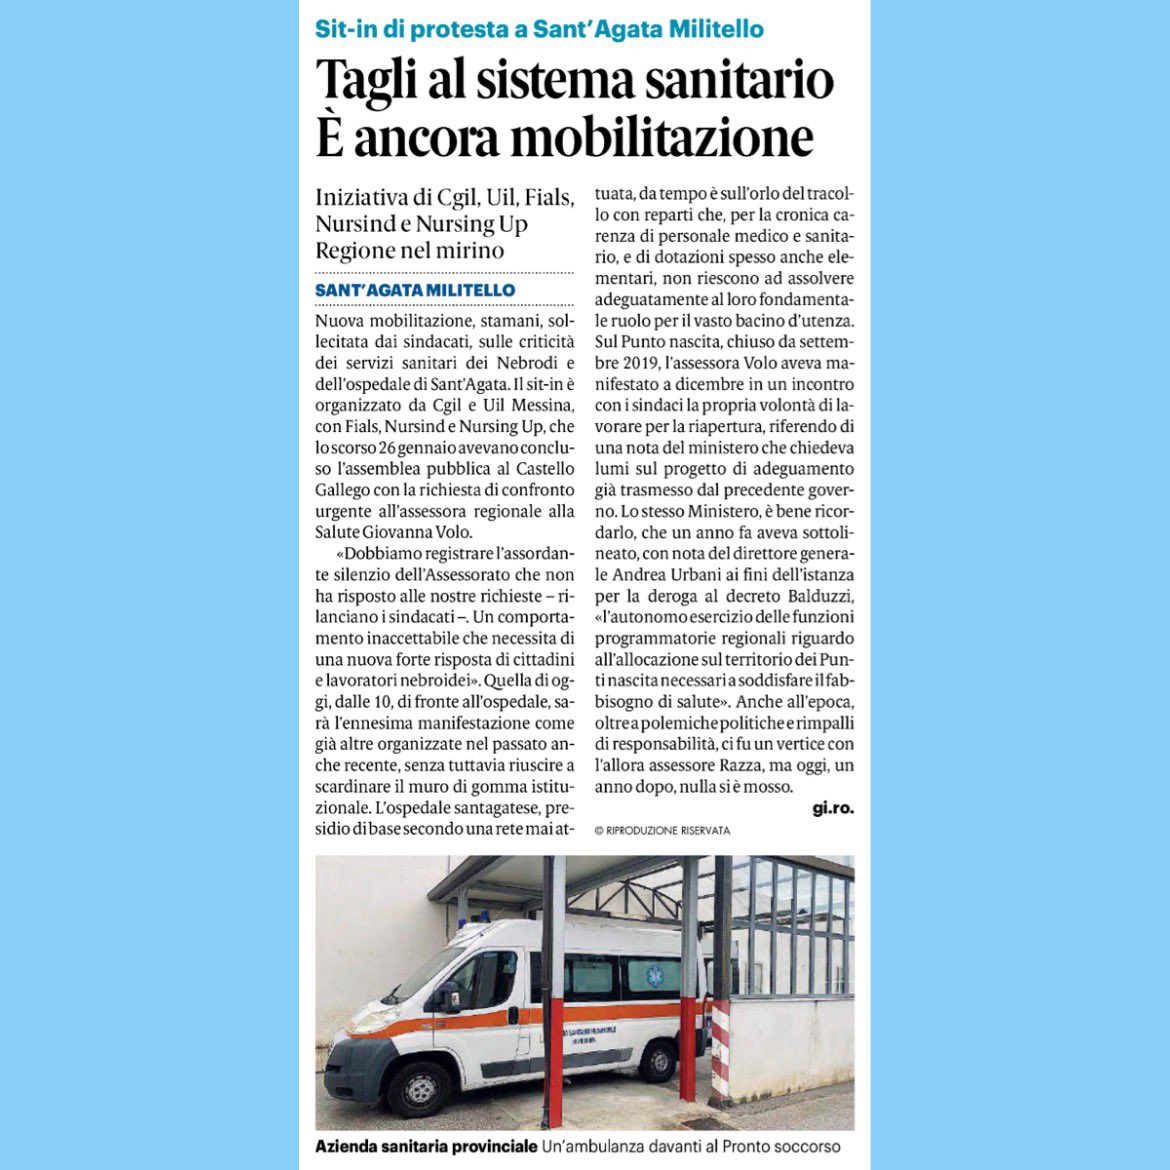 Gazzetta del Sud (4.3.23)
#uil #messina #ospedale #dirittoallasalute #santagatadimilitello #terzomillennio